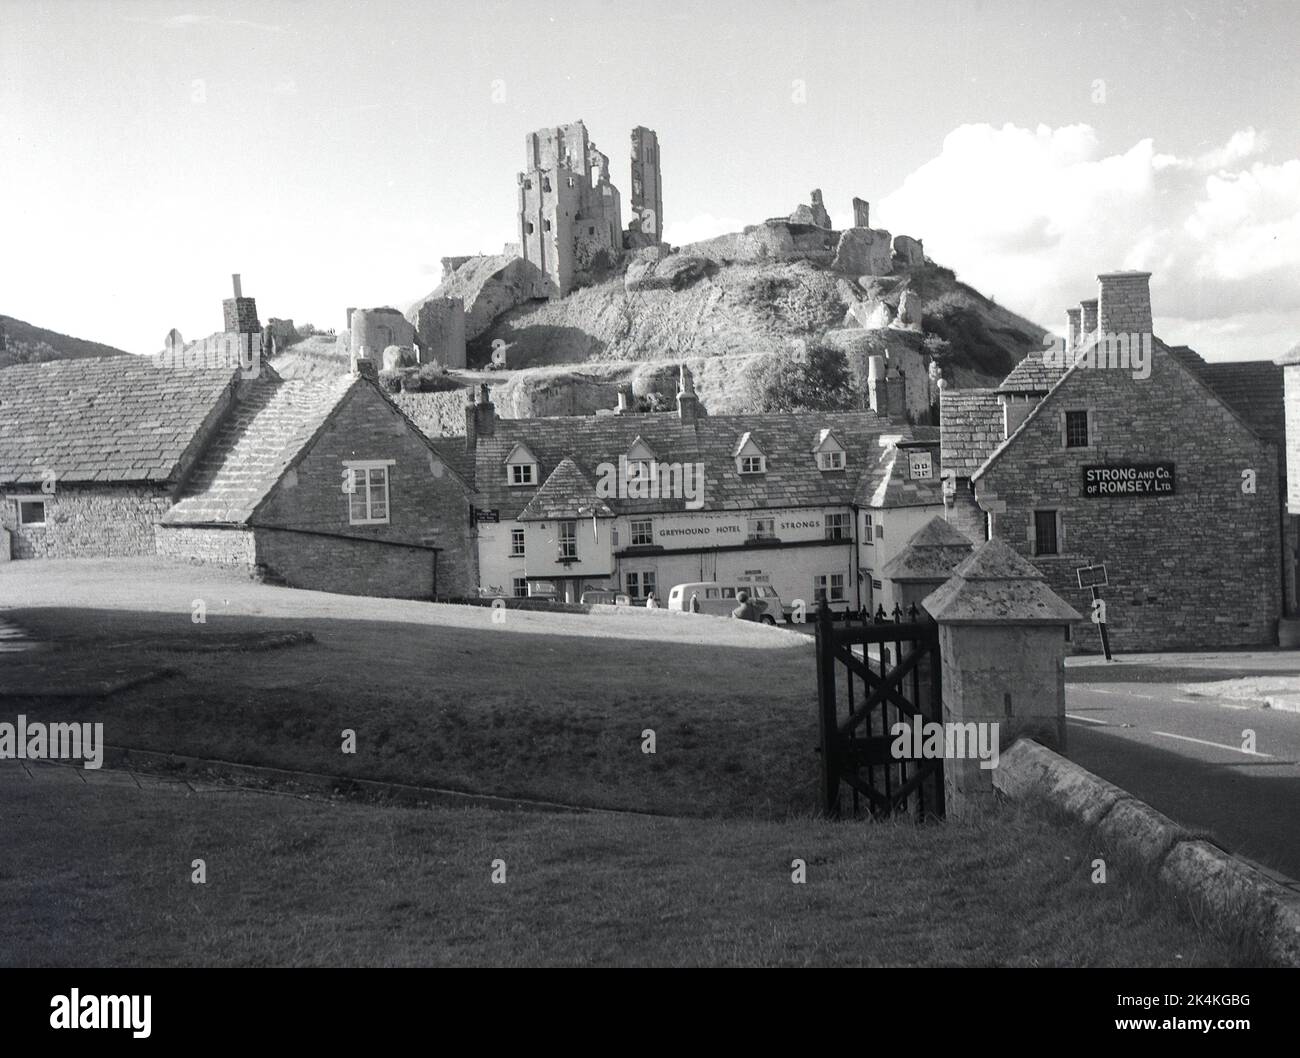 1964, historique, le village de Corfe caste et une vue sur l'hôtel Greyhound, avec les ruines du château de Corfe sur la colline, Dorset, Angleterre, Royaume-Uni. Signe pour Strong et Co de Romsey Ltd sur le mur du bâtiment. Il devint plus tard un pub Whitebread. Datant de 1580, le pub est l'une des plus anciennes auberges de coaching d'Angleterre. Construit par Guillaume le Conquérant, le château au sommet de la colline était l'une des premières fortifications construites en partie de pierre, mais en 1645 fut fait en contrebas, c'est-à-dire partiellement détruit, après la guerre civile anglaise, pour empêcher qu'il soit utilisé comme une forteresse potentielle et est devenu une ruine. Banque D'Images